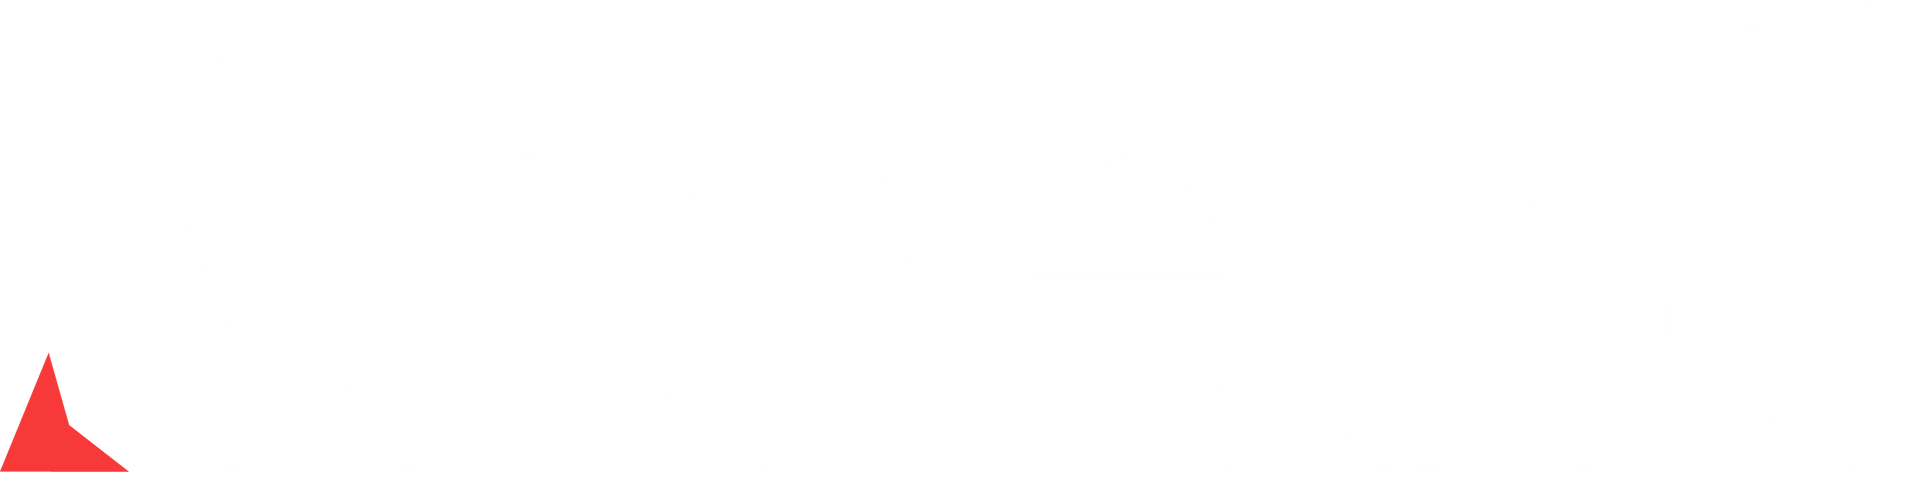 Ascend Partners Inc Logo